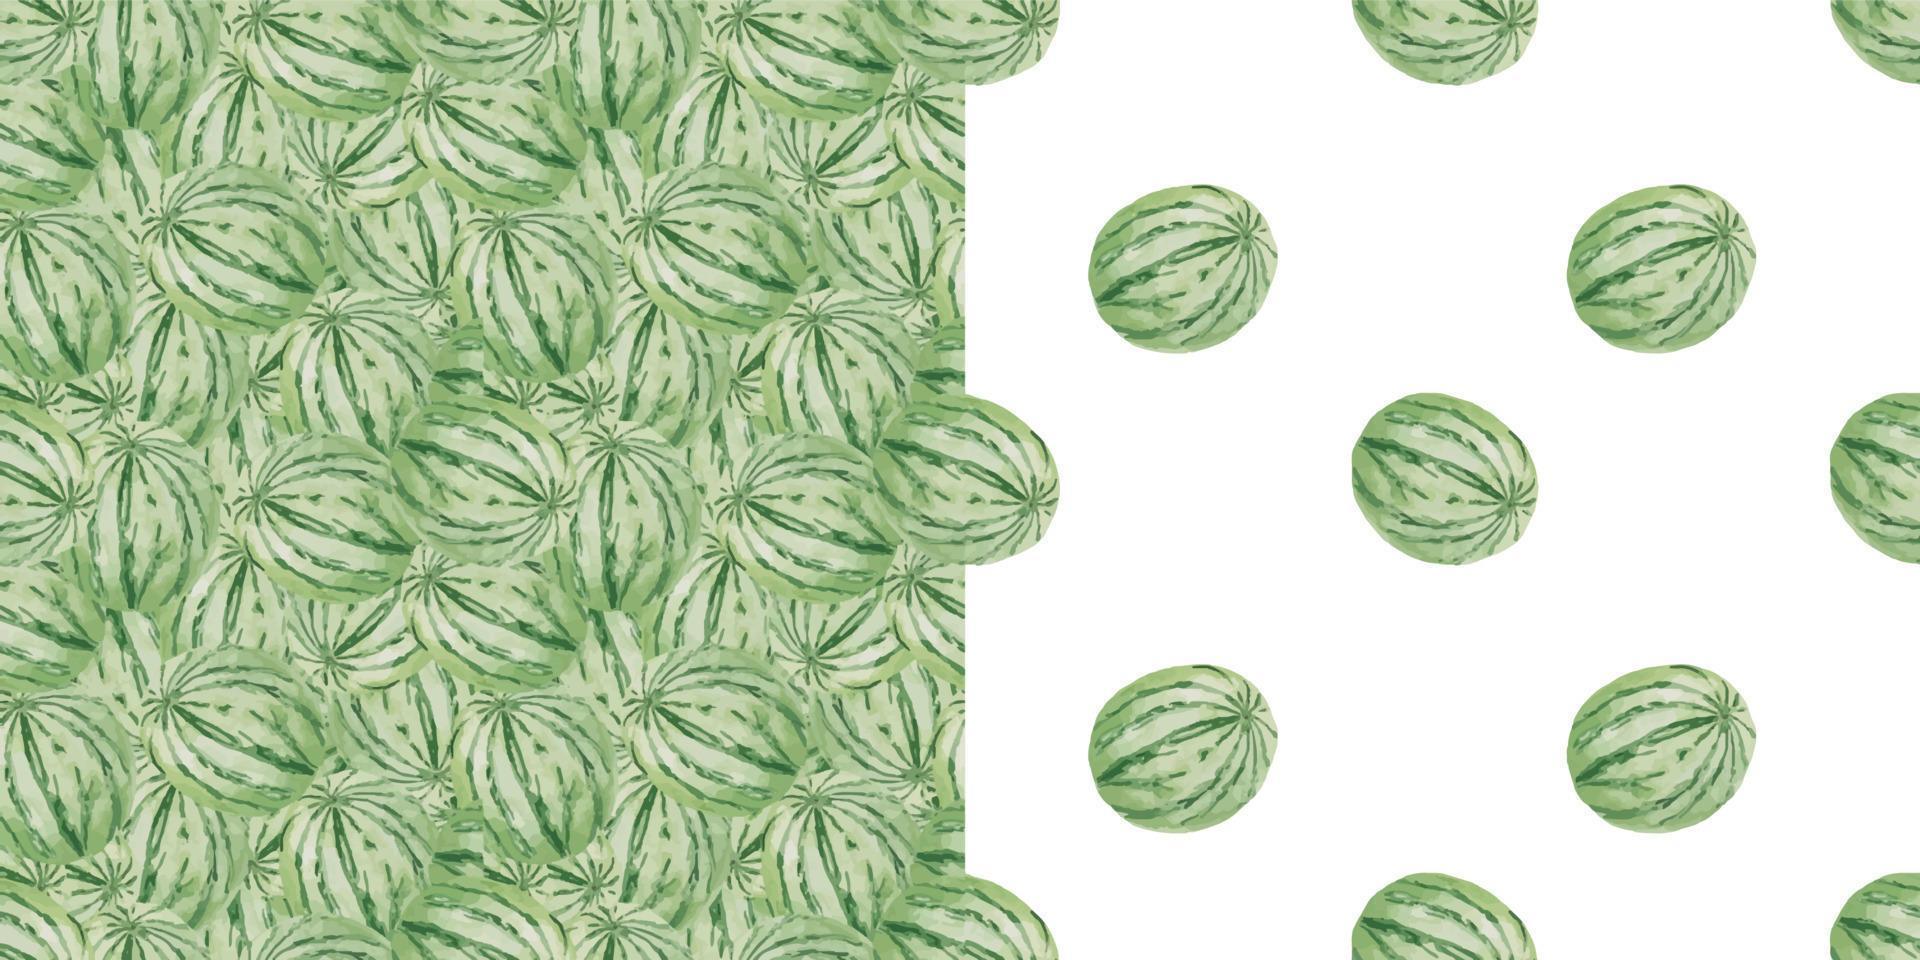 naadloze aquarel naadloze solide achtergrondpatroon met hele groene ronde watermeloen. zomersjabloonachtergrond met fruit voor ansichtkaarten en kaarten vector